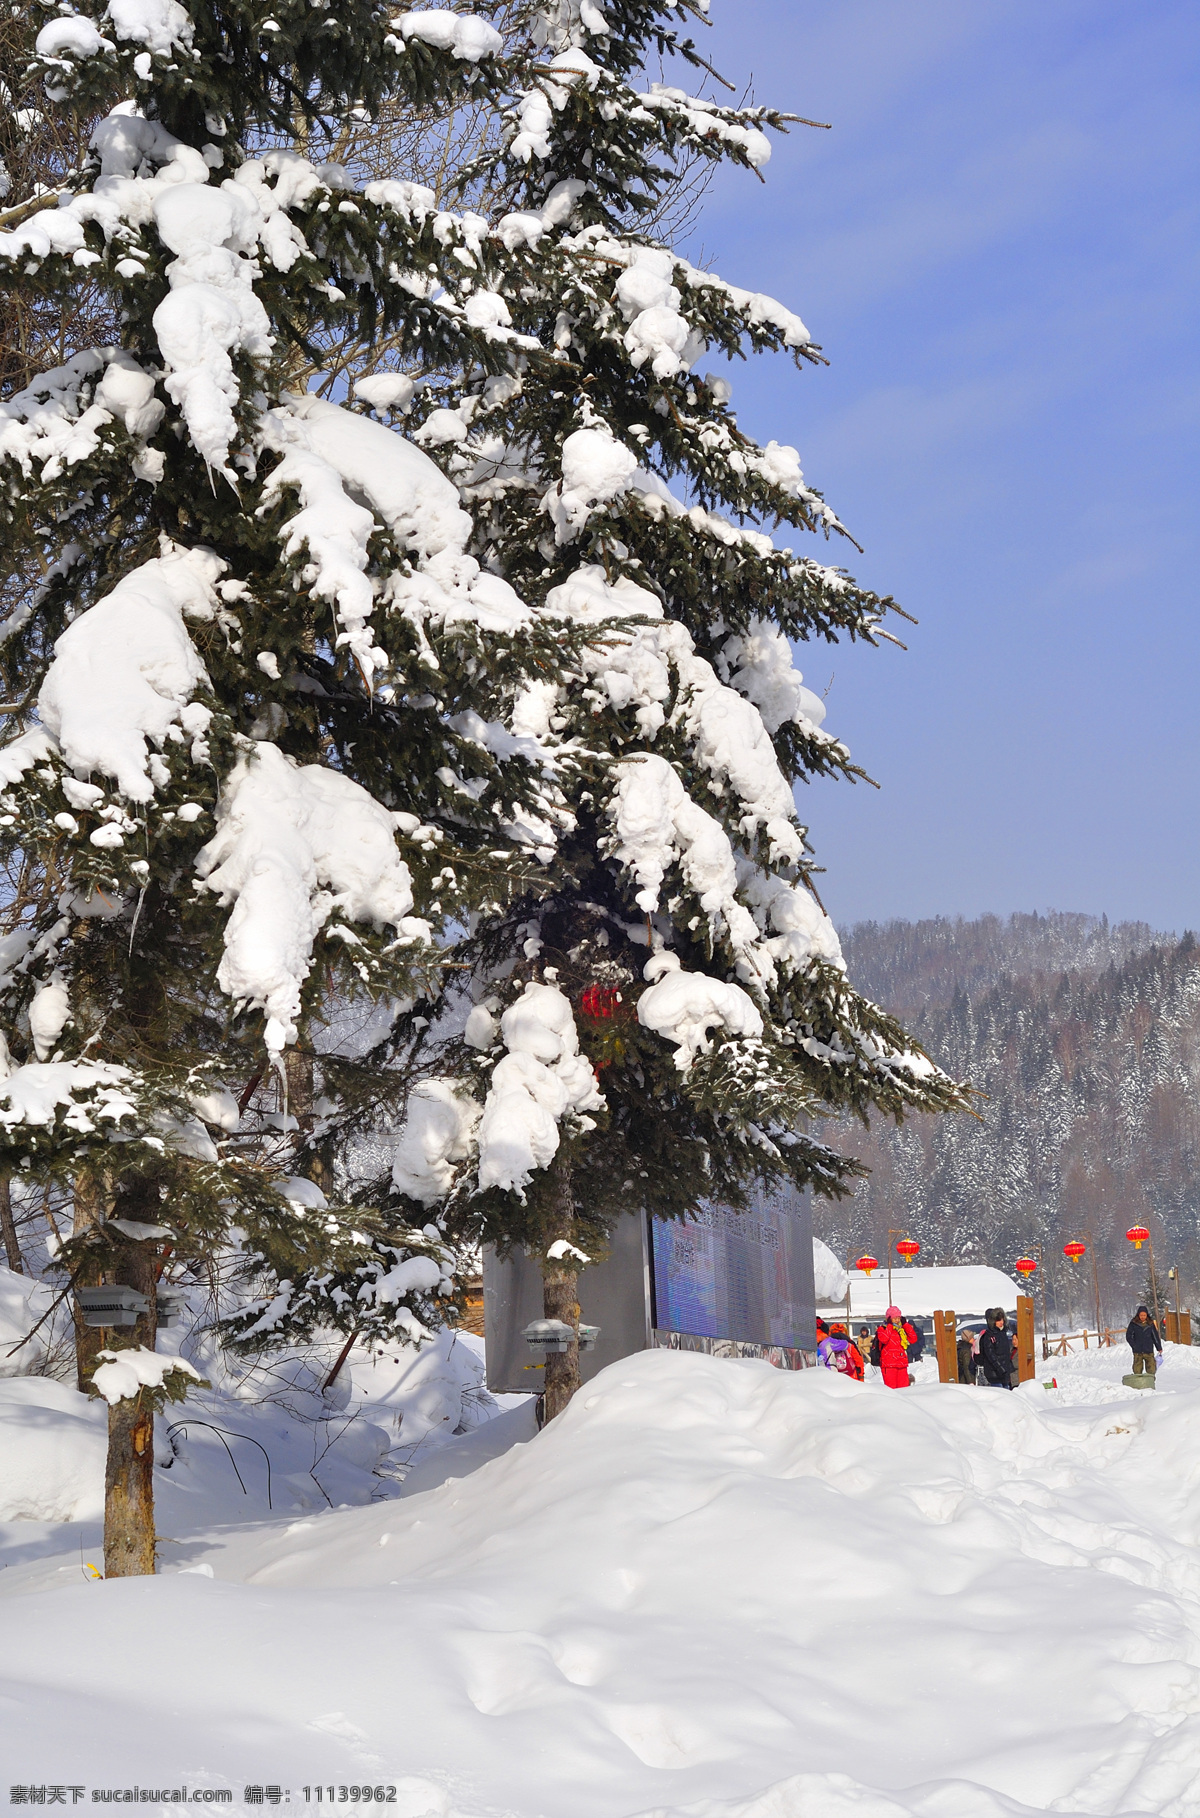 房屋 广告牌 红灯 积雪 蓝天 山峦 射灯 雪乡 松树 游人 冬季 冰雪 树挂 凇 自然风景 自然景观 矢量图